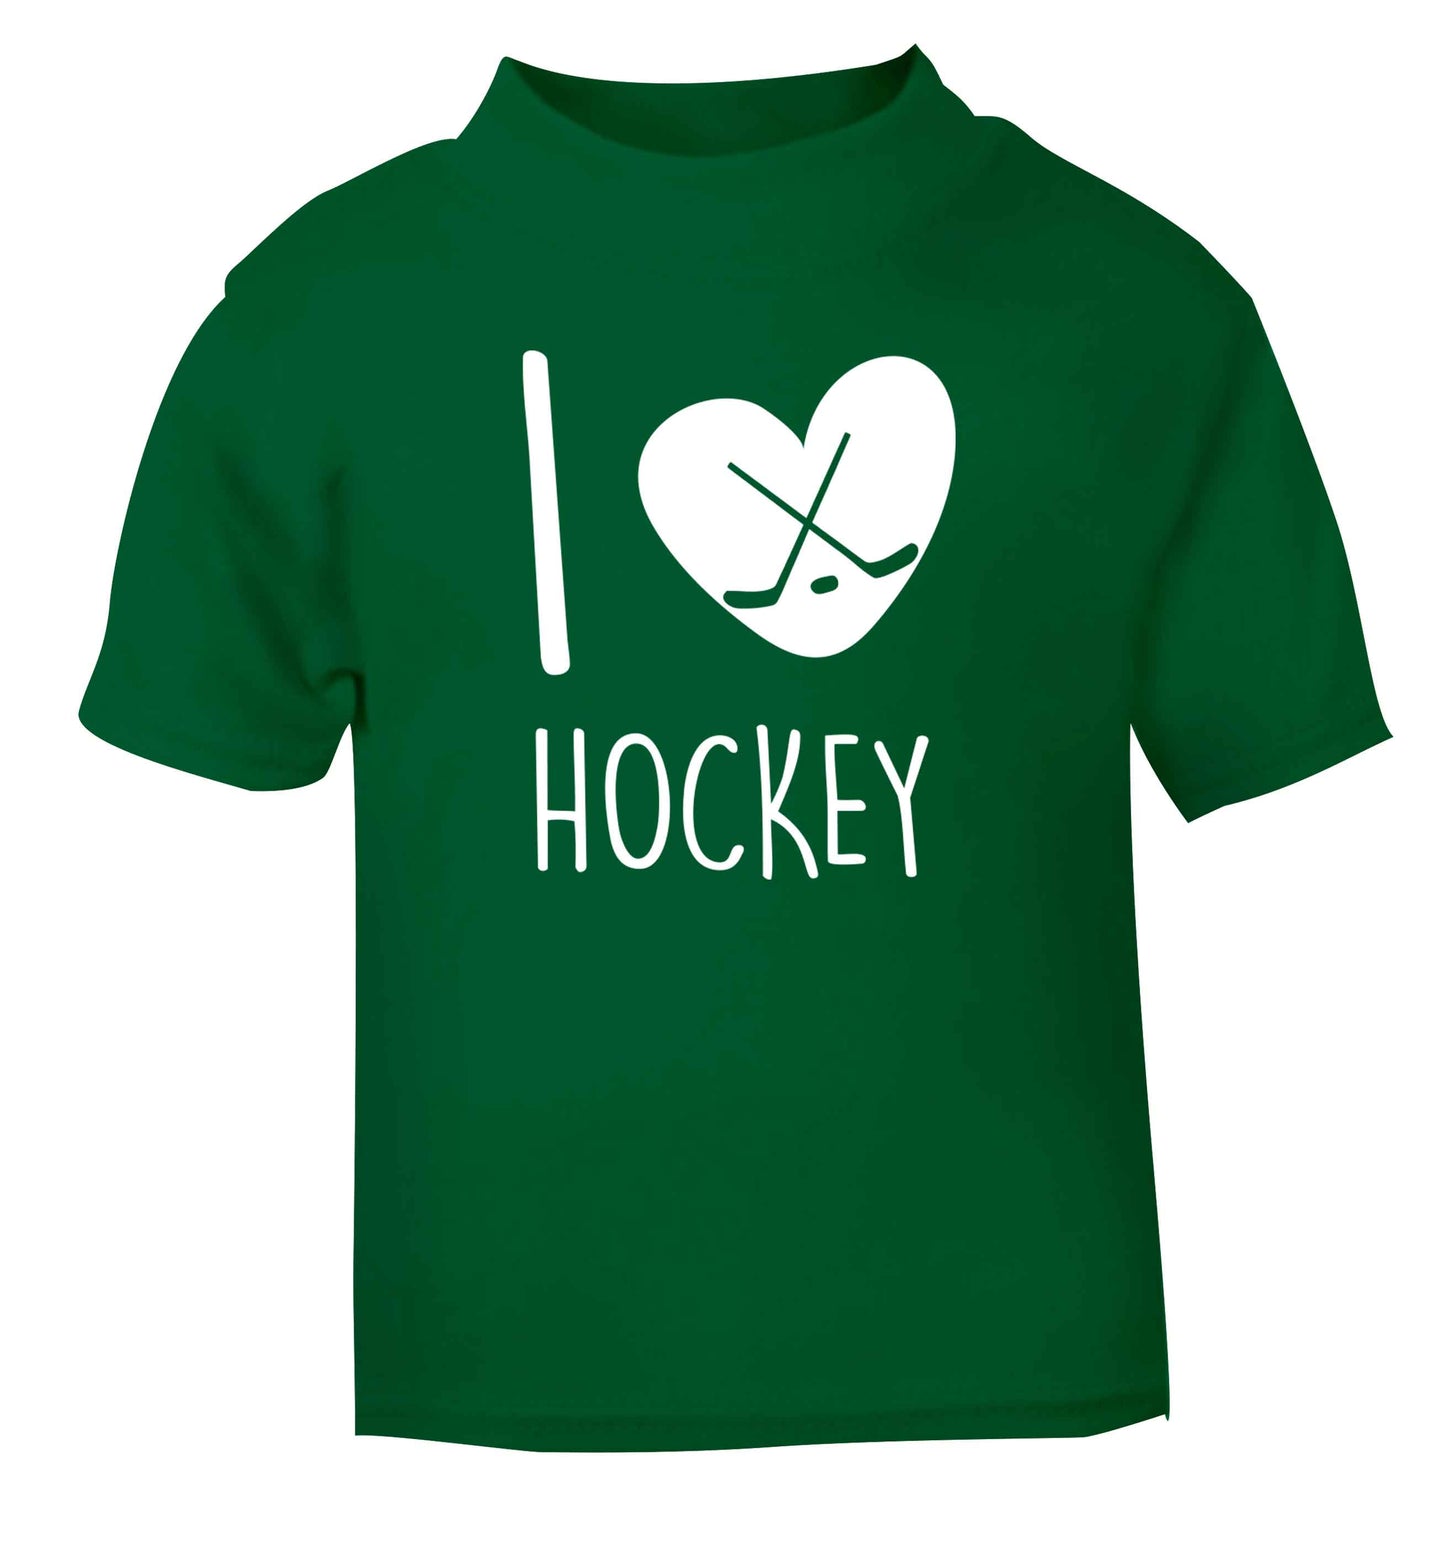 I love hockey green Baby Toddler Tshirt 2 Years